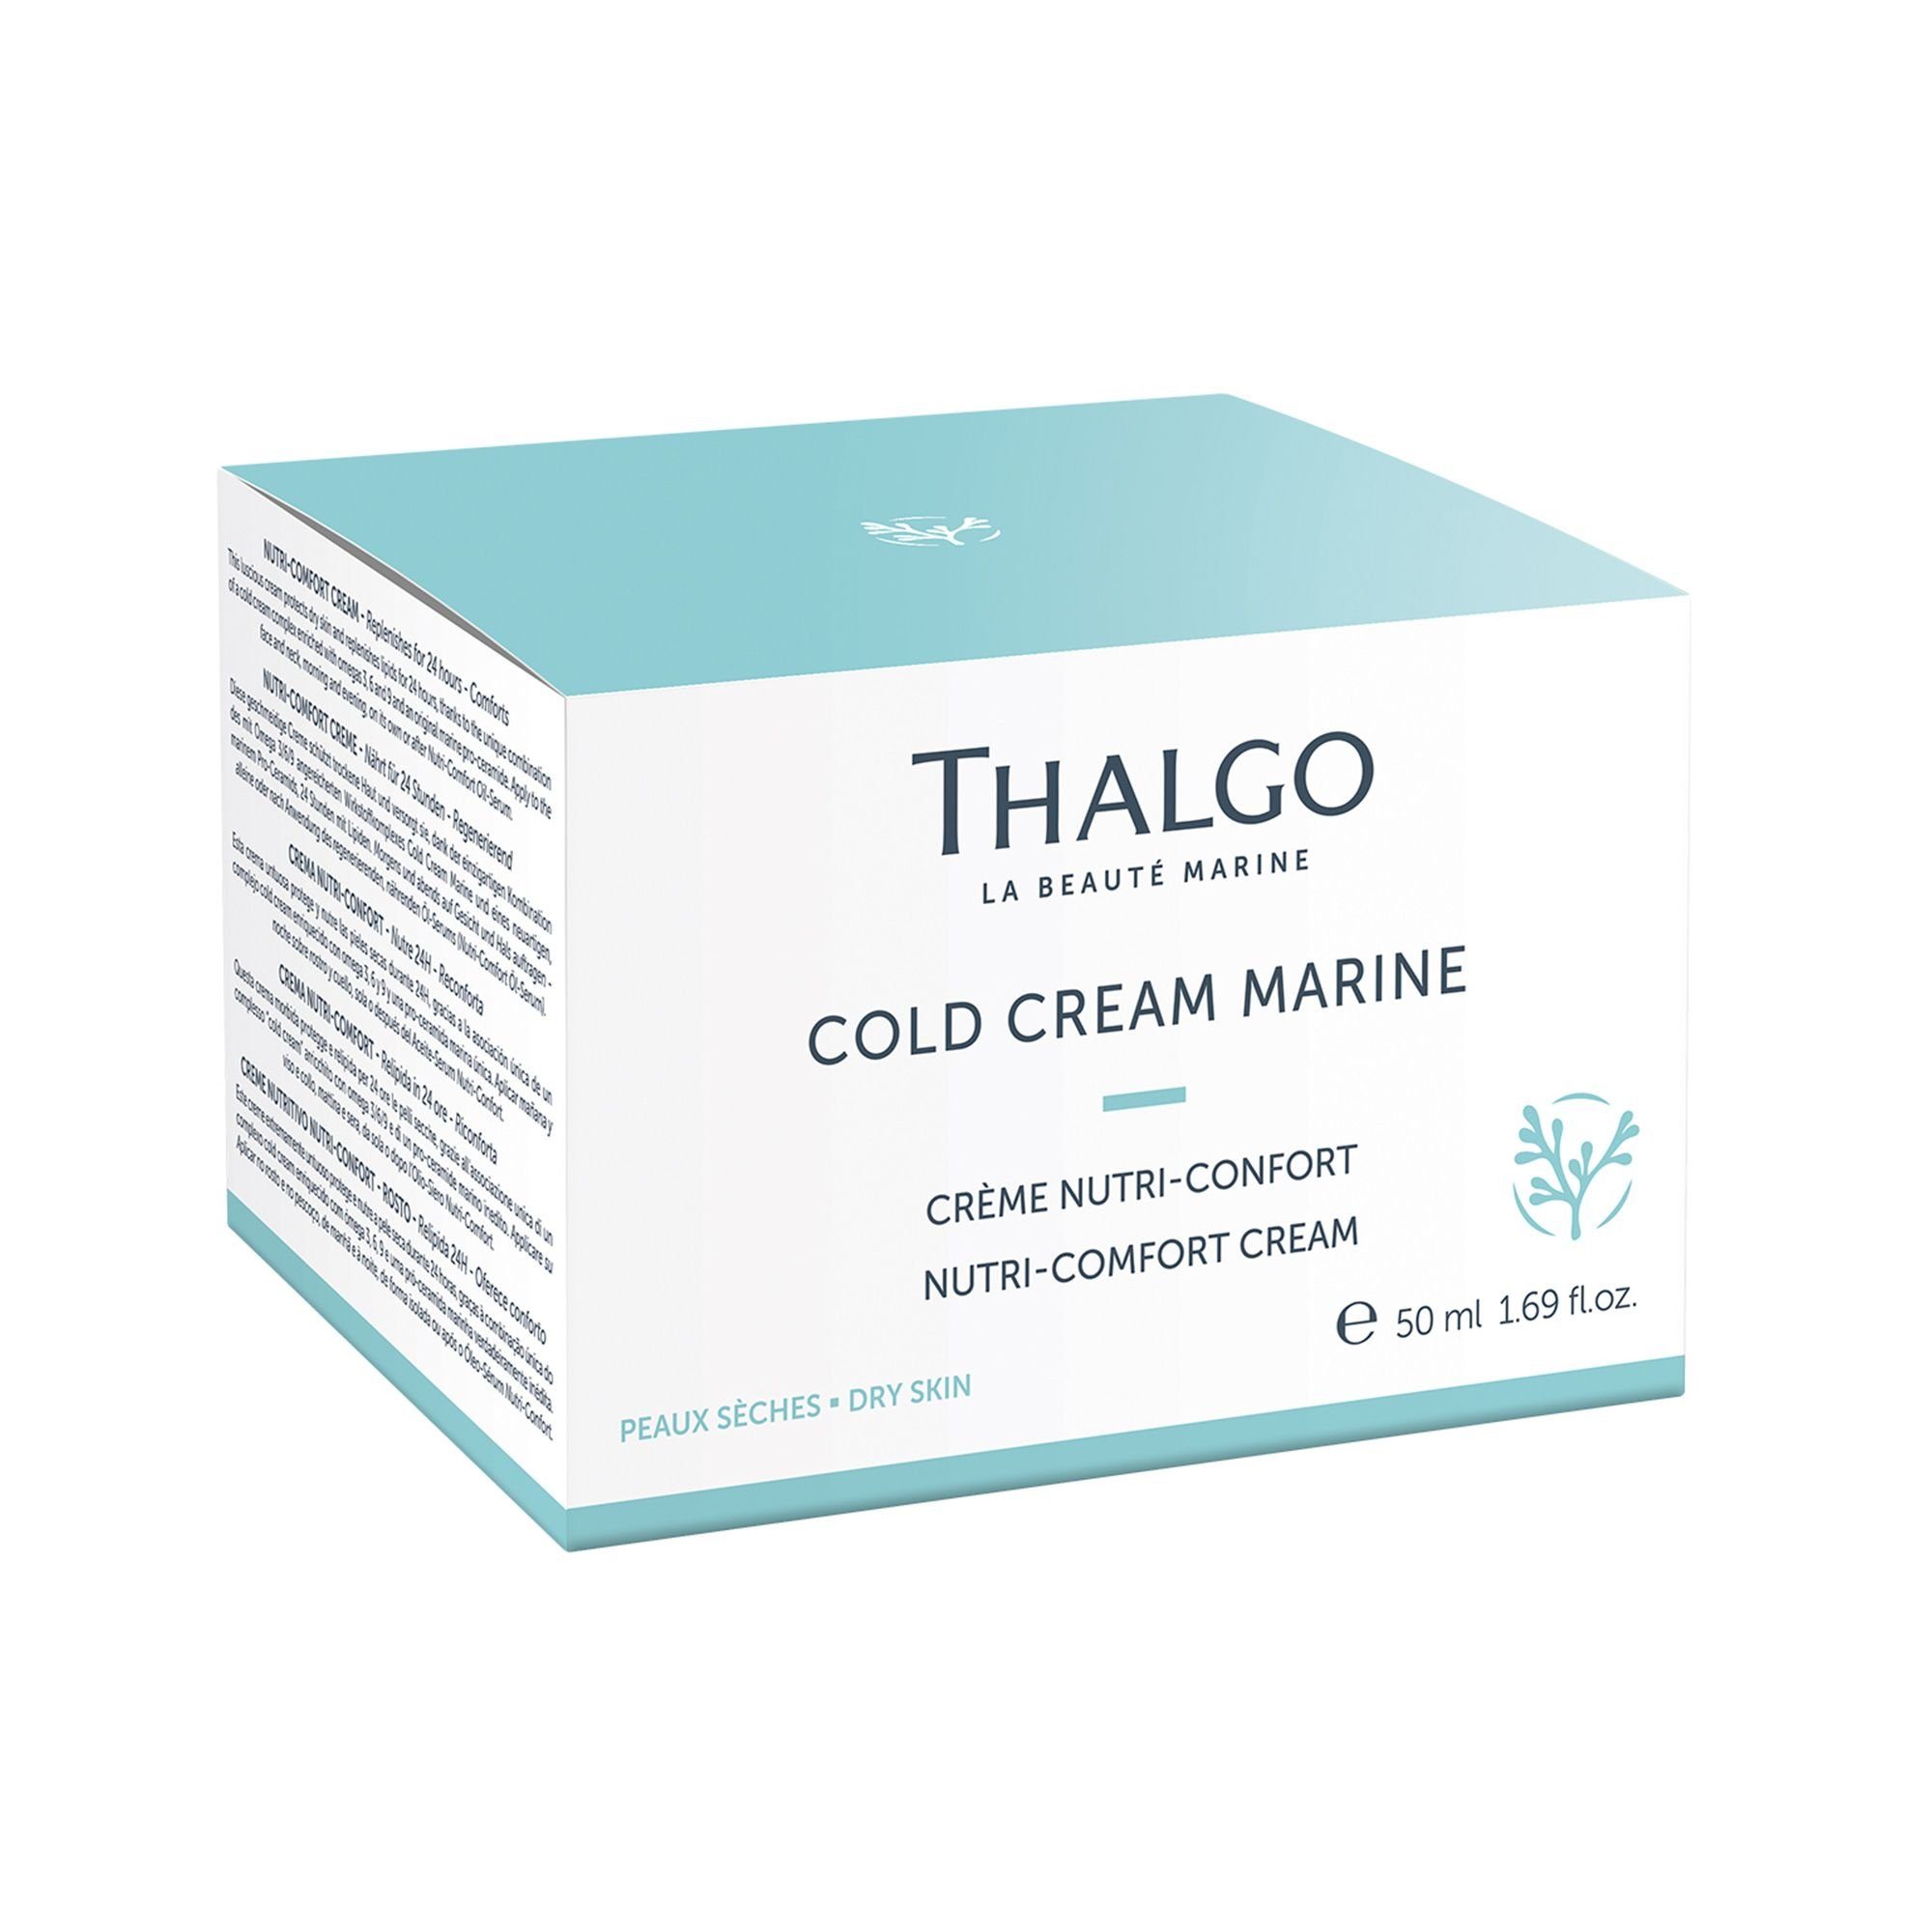 Haut, für Schutz trockene THALGO Anti-Aging-Creme Nutri-Comfort-Creme, Sanfte 50ml